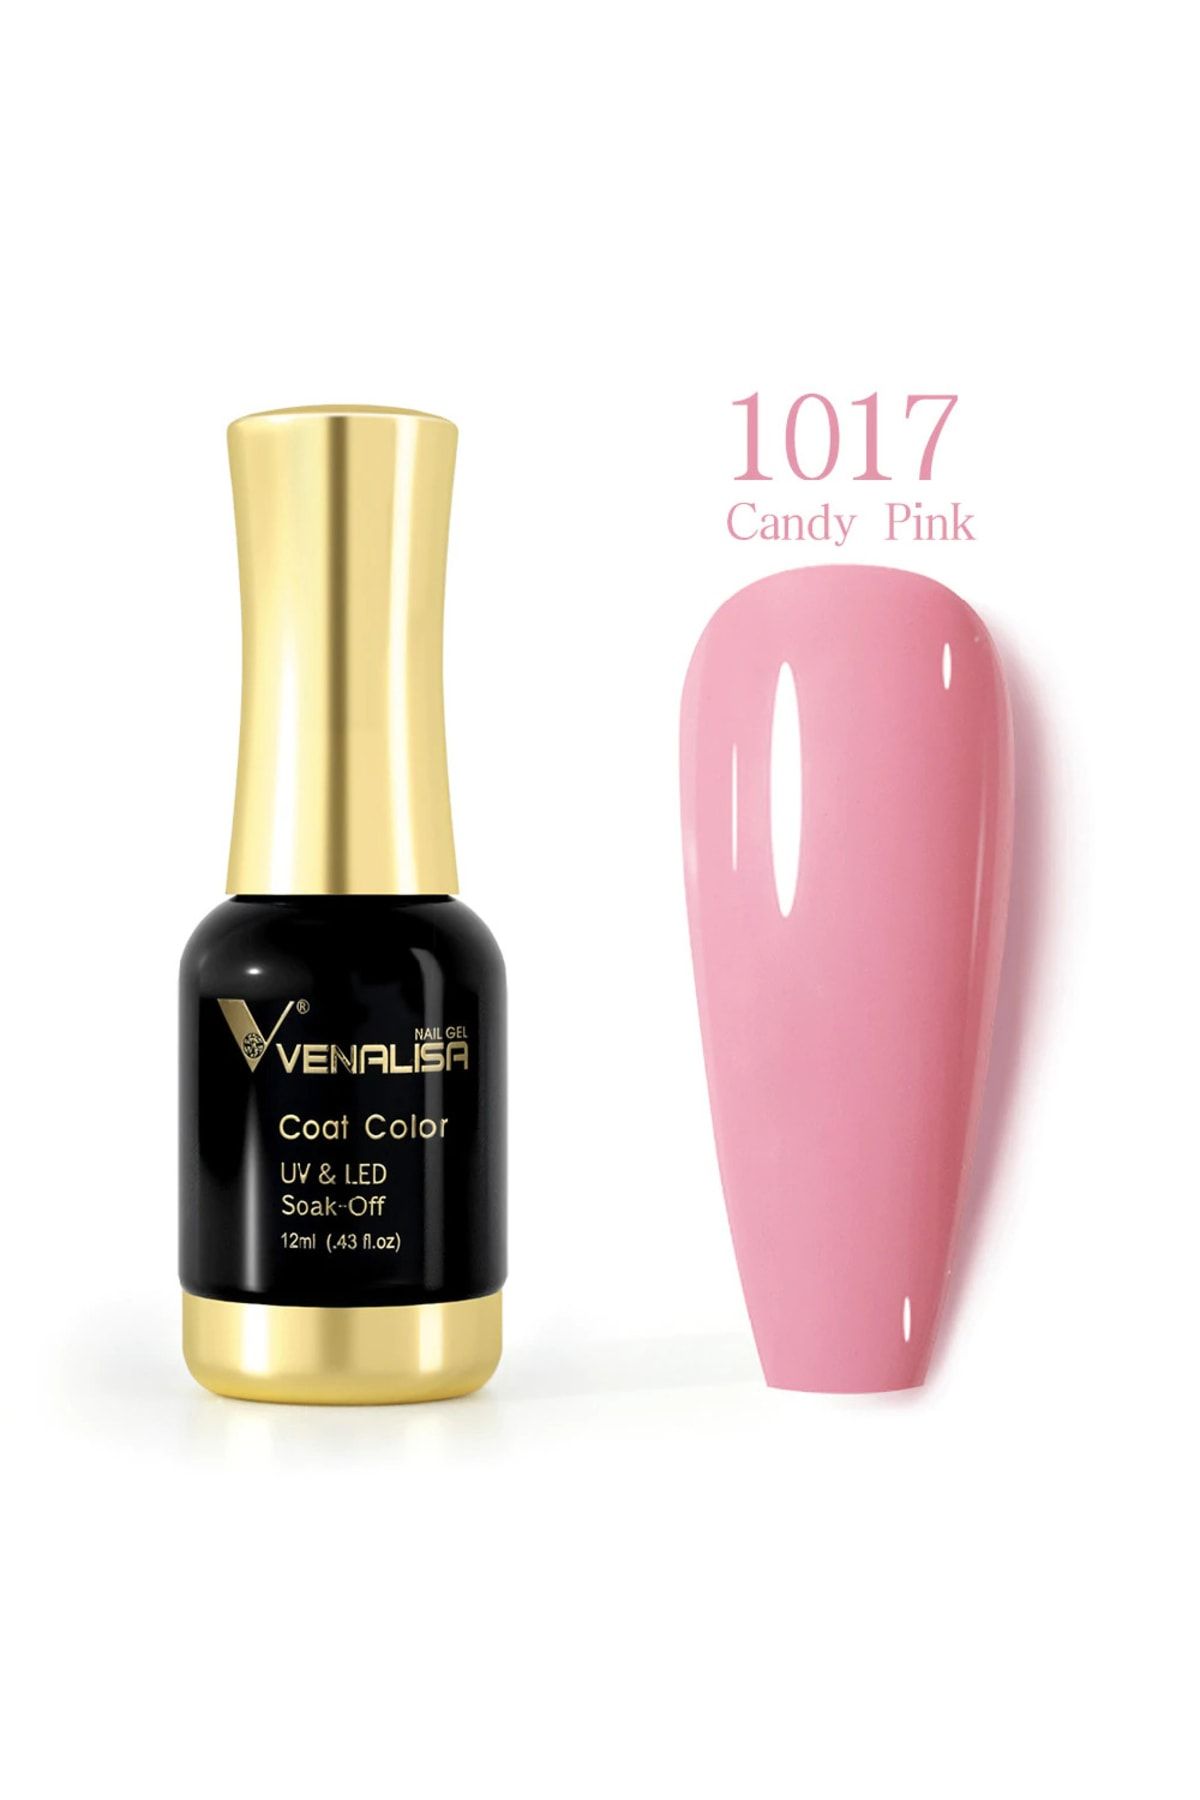 Venalisa 12 ml Kalıcı Oje Candy Pink Uv Led Oje 1017